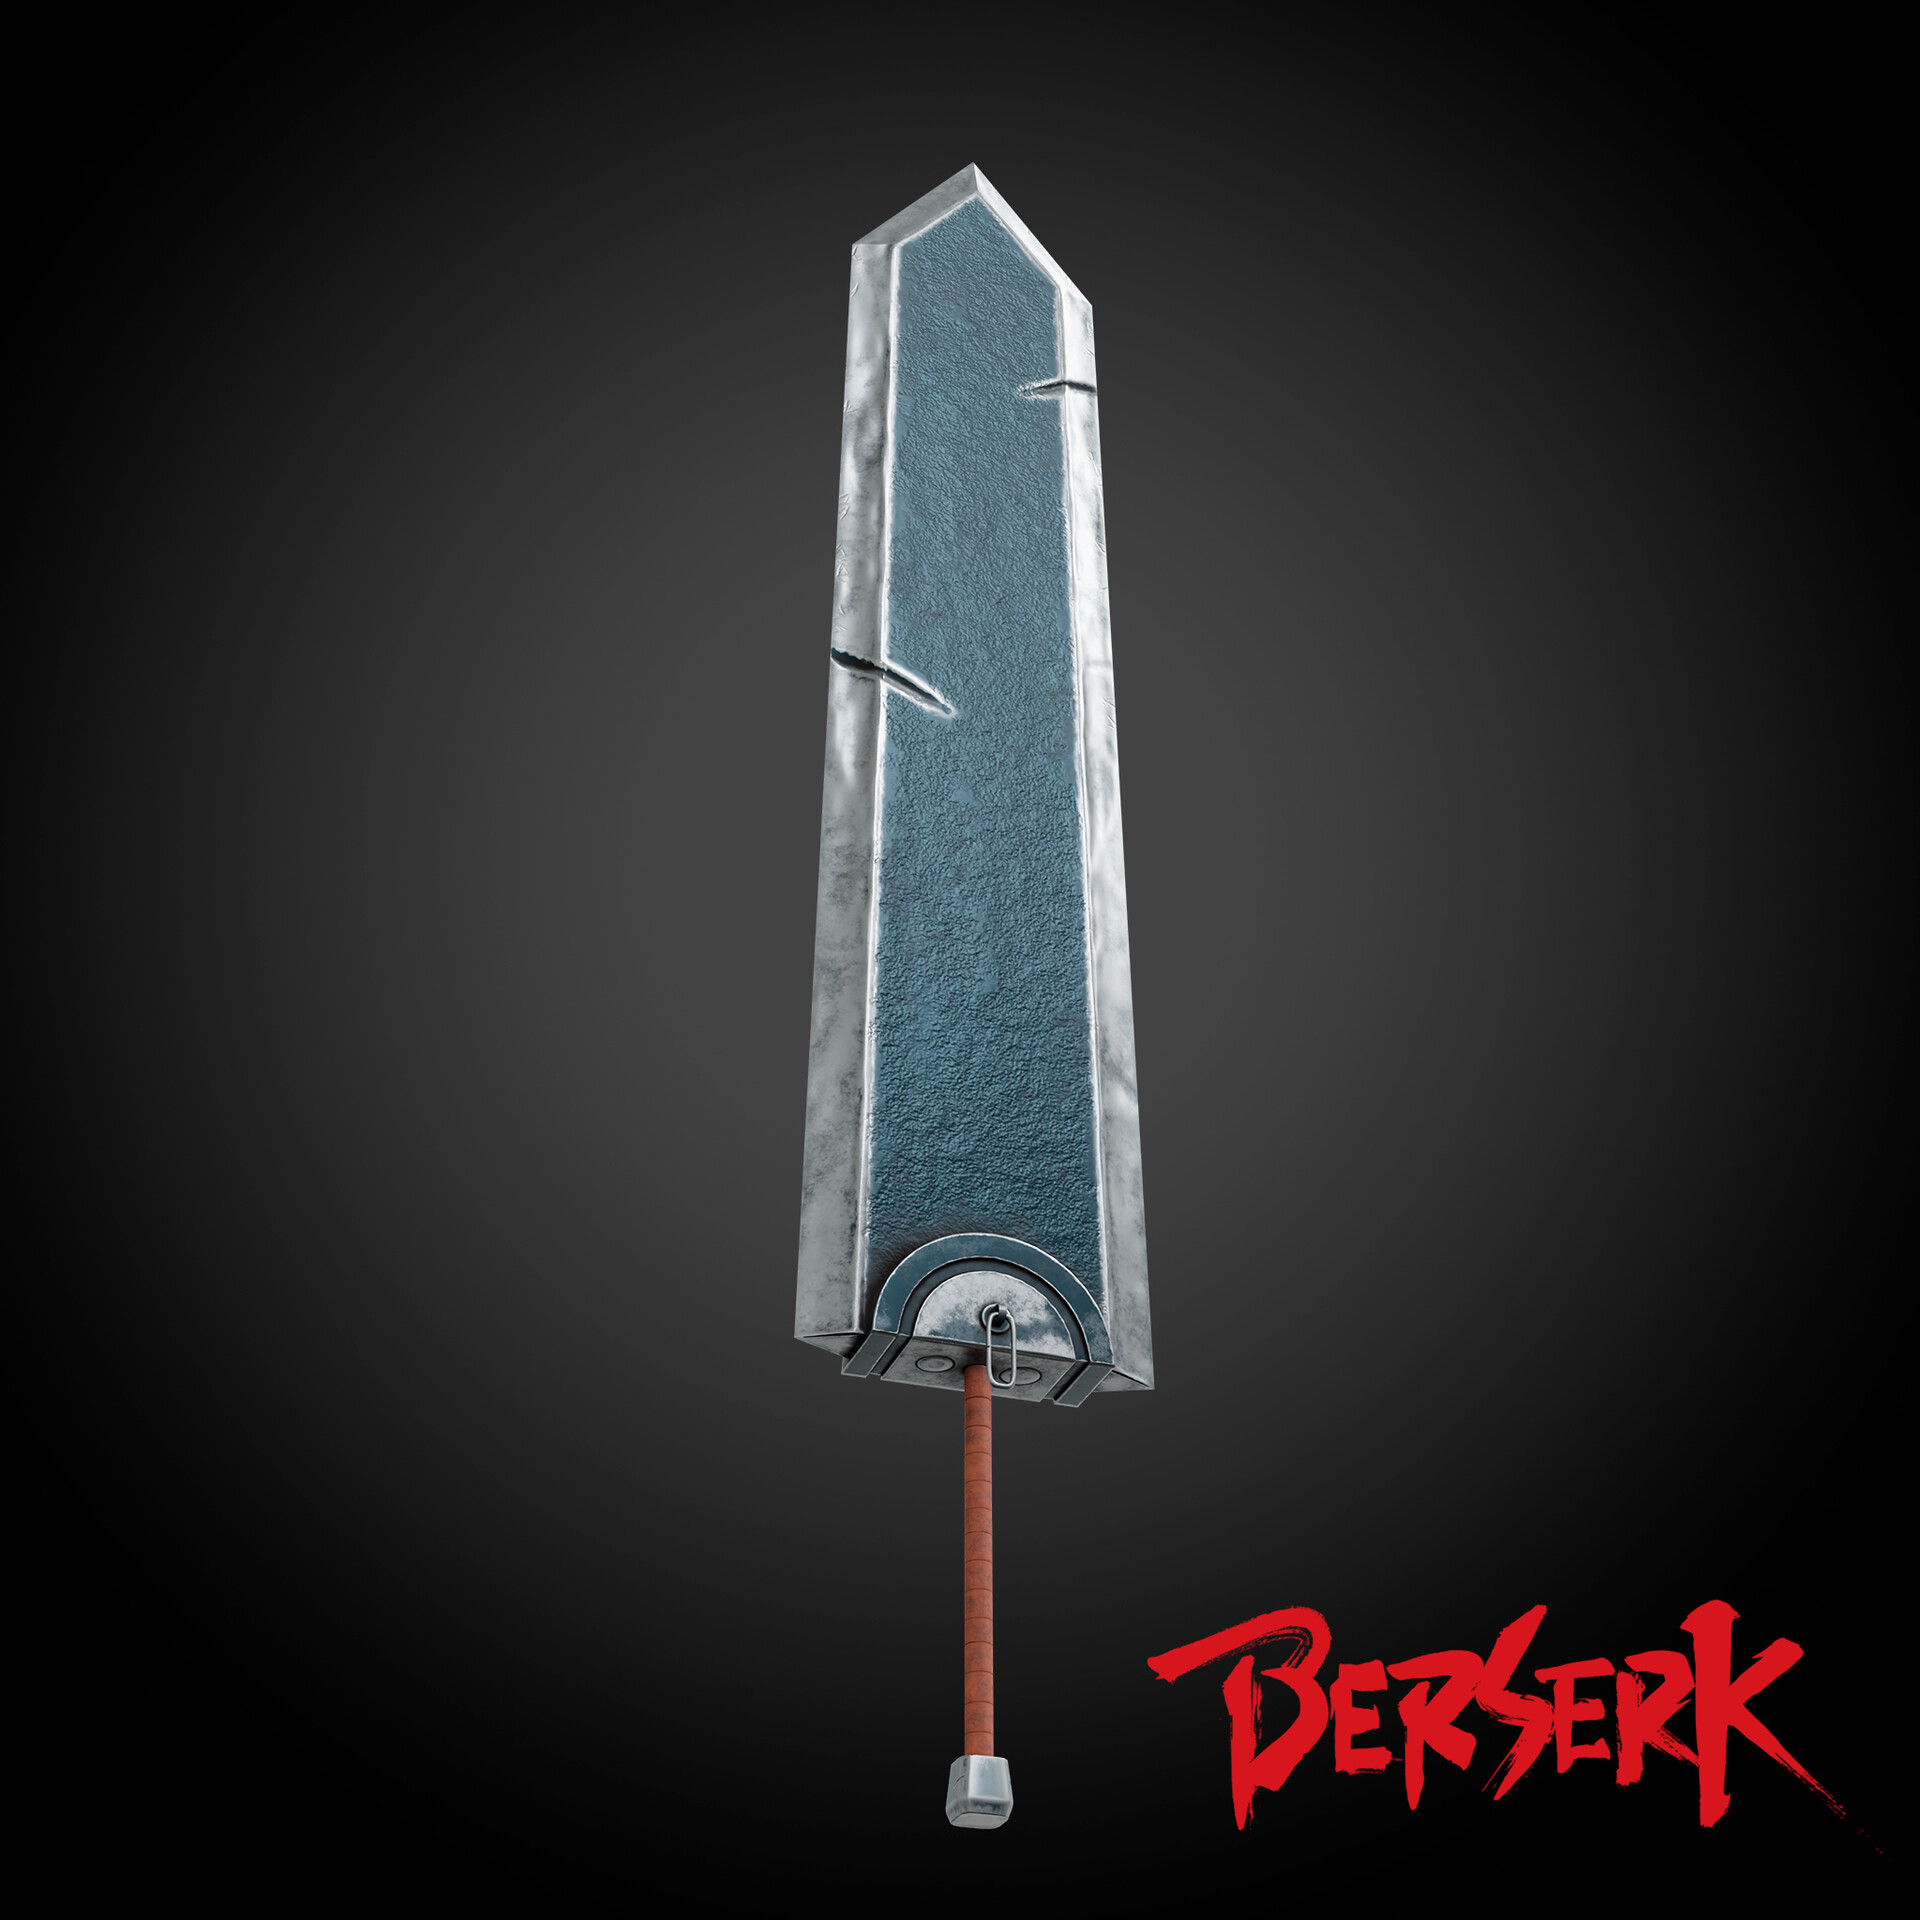 3D Printable Dragon-Slayer-Berserk by AlanLou